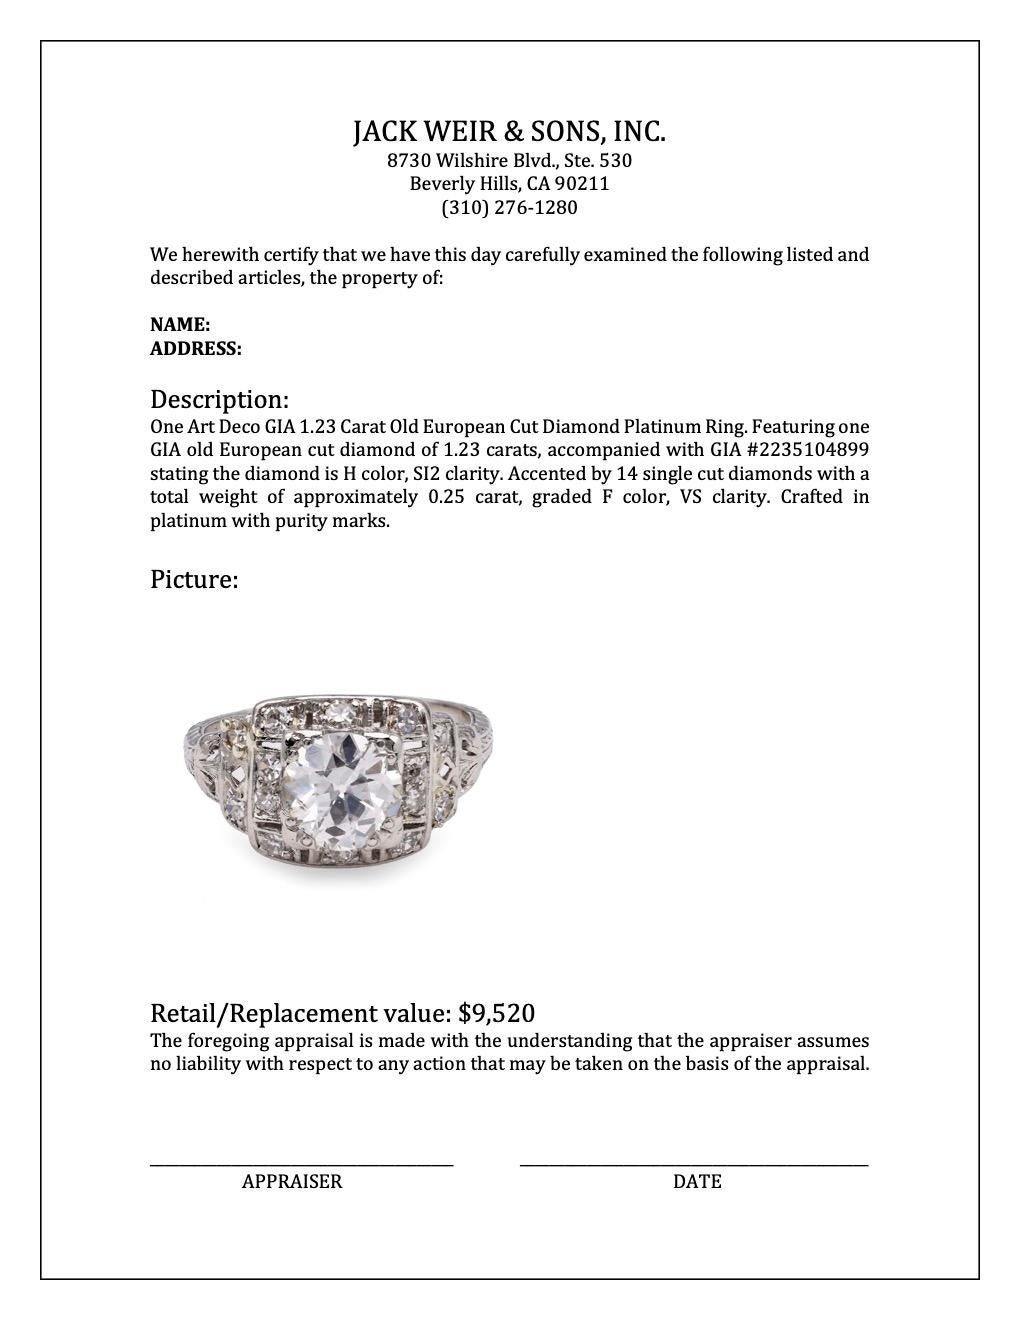 Art Deco GIA 1.23 Carat Old European Cut Diamond Platinum Ring 4